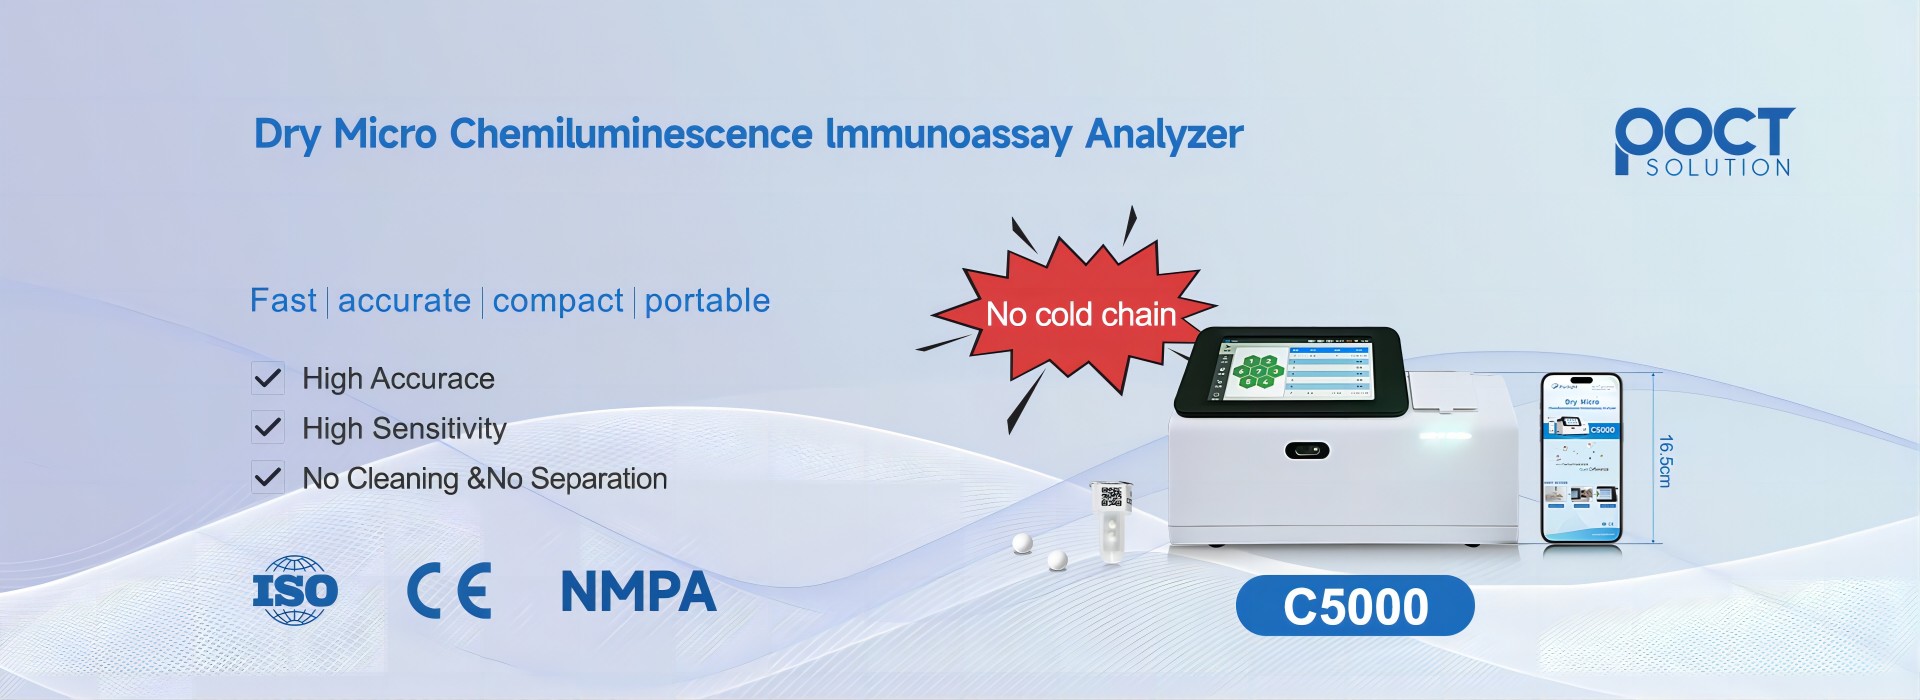 ¿Para qué se utiliza el analizador de inmunoensayo de quimioluminiscencia?
        